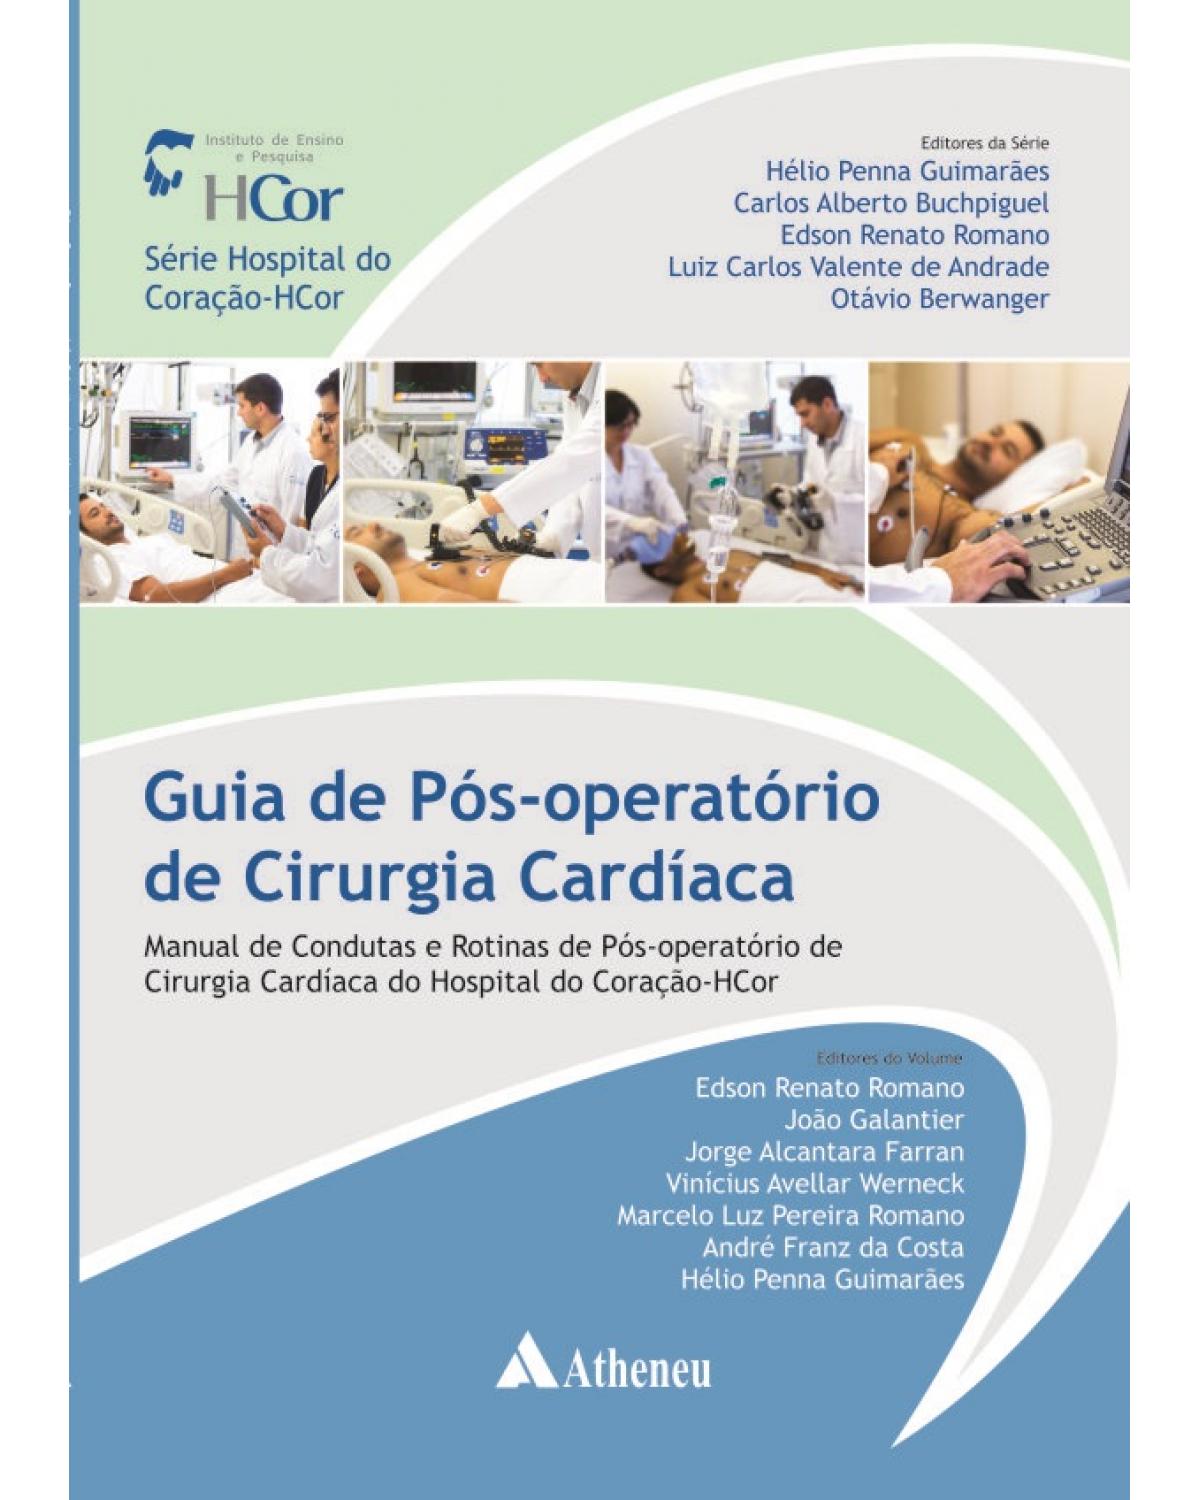 Guia de pós-operatório de cirurgia cardíaca: Manual de condutas e rotinas de pós-operatório de cirurgia cardíaca do Hospital do Coração-HCor - 1ª Edição | 2014